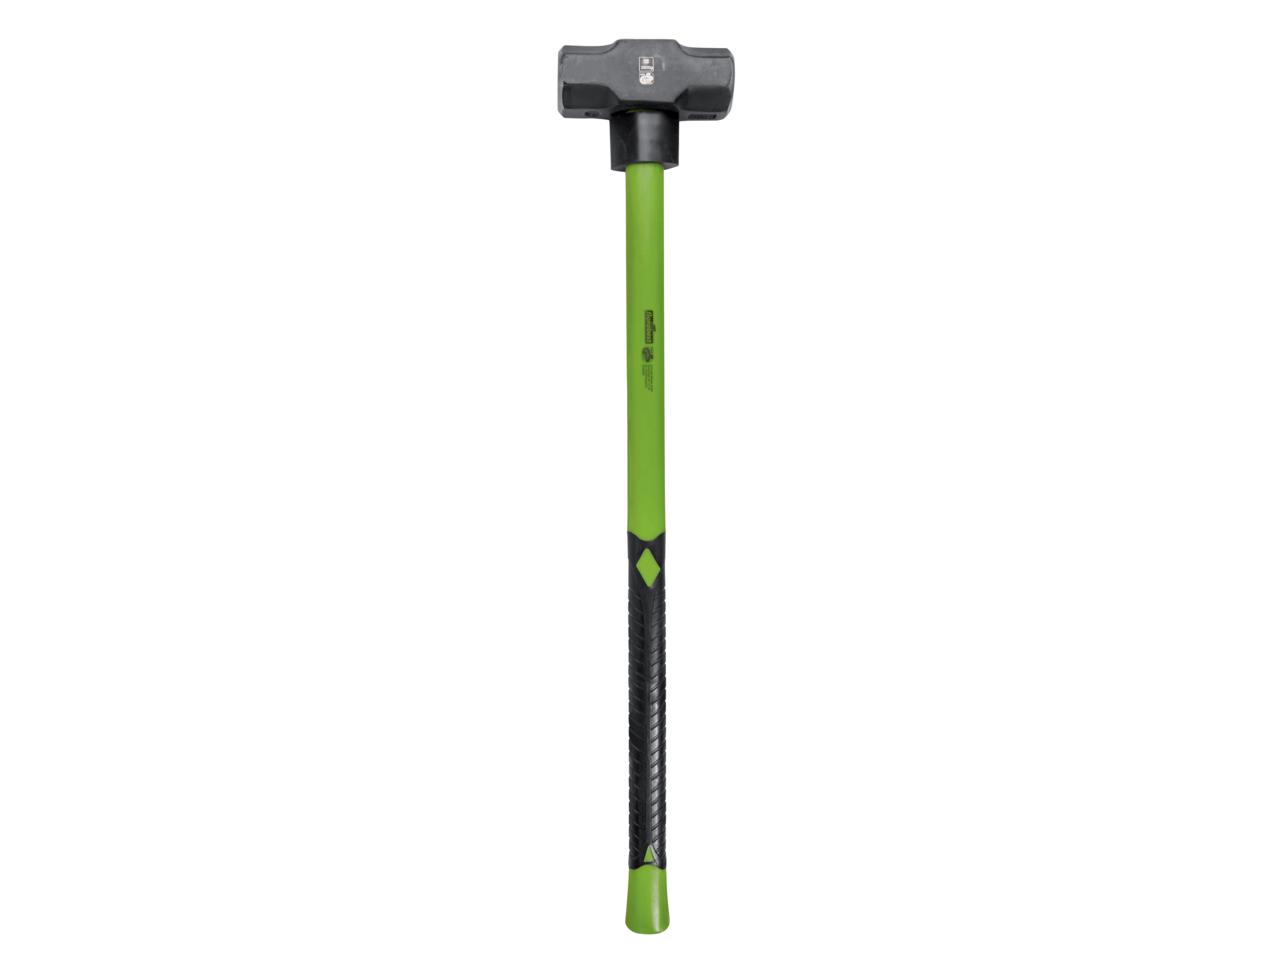 Florabest Sledge Hammer/Axe